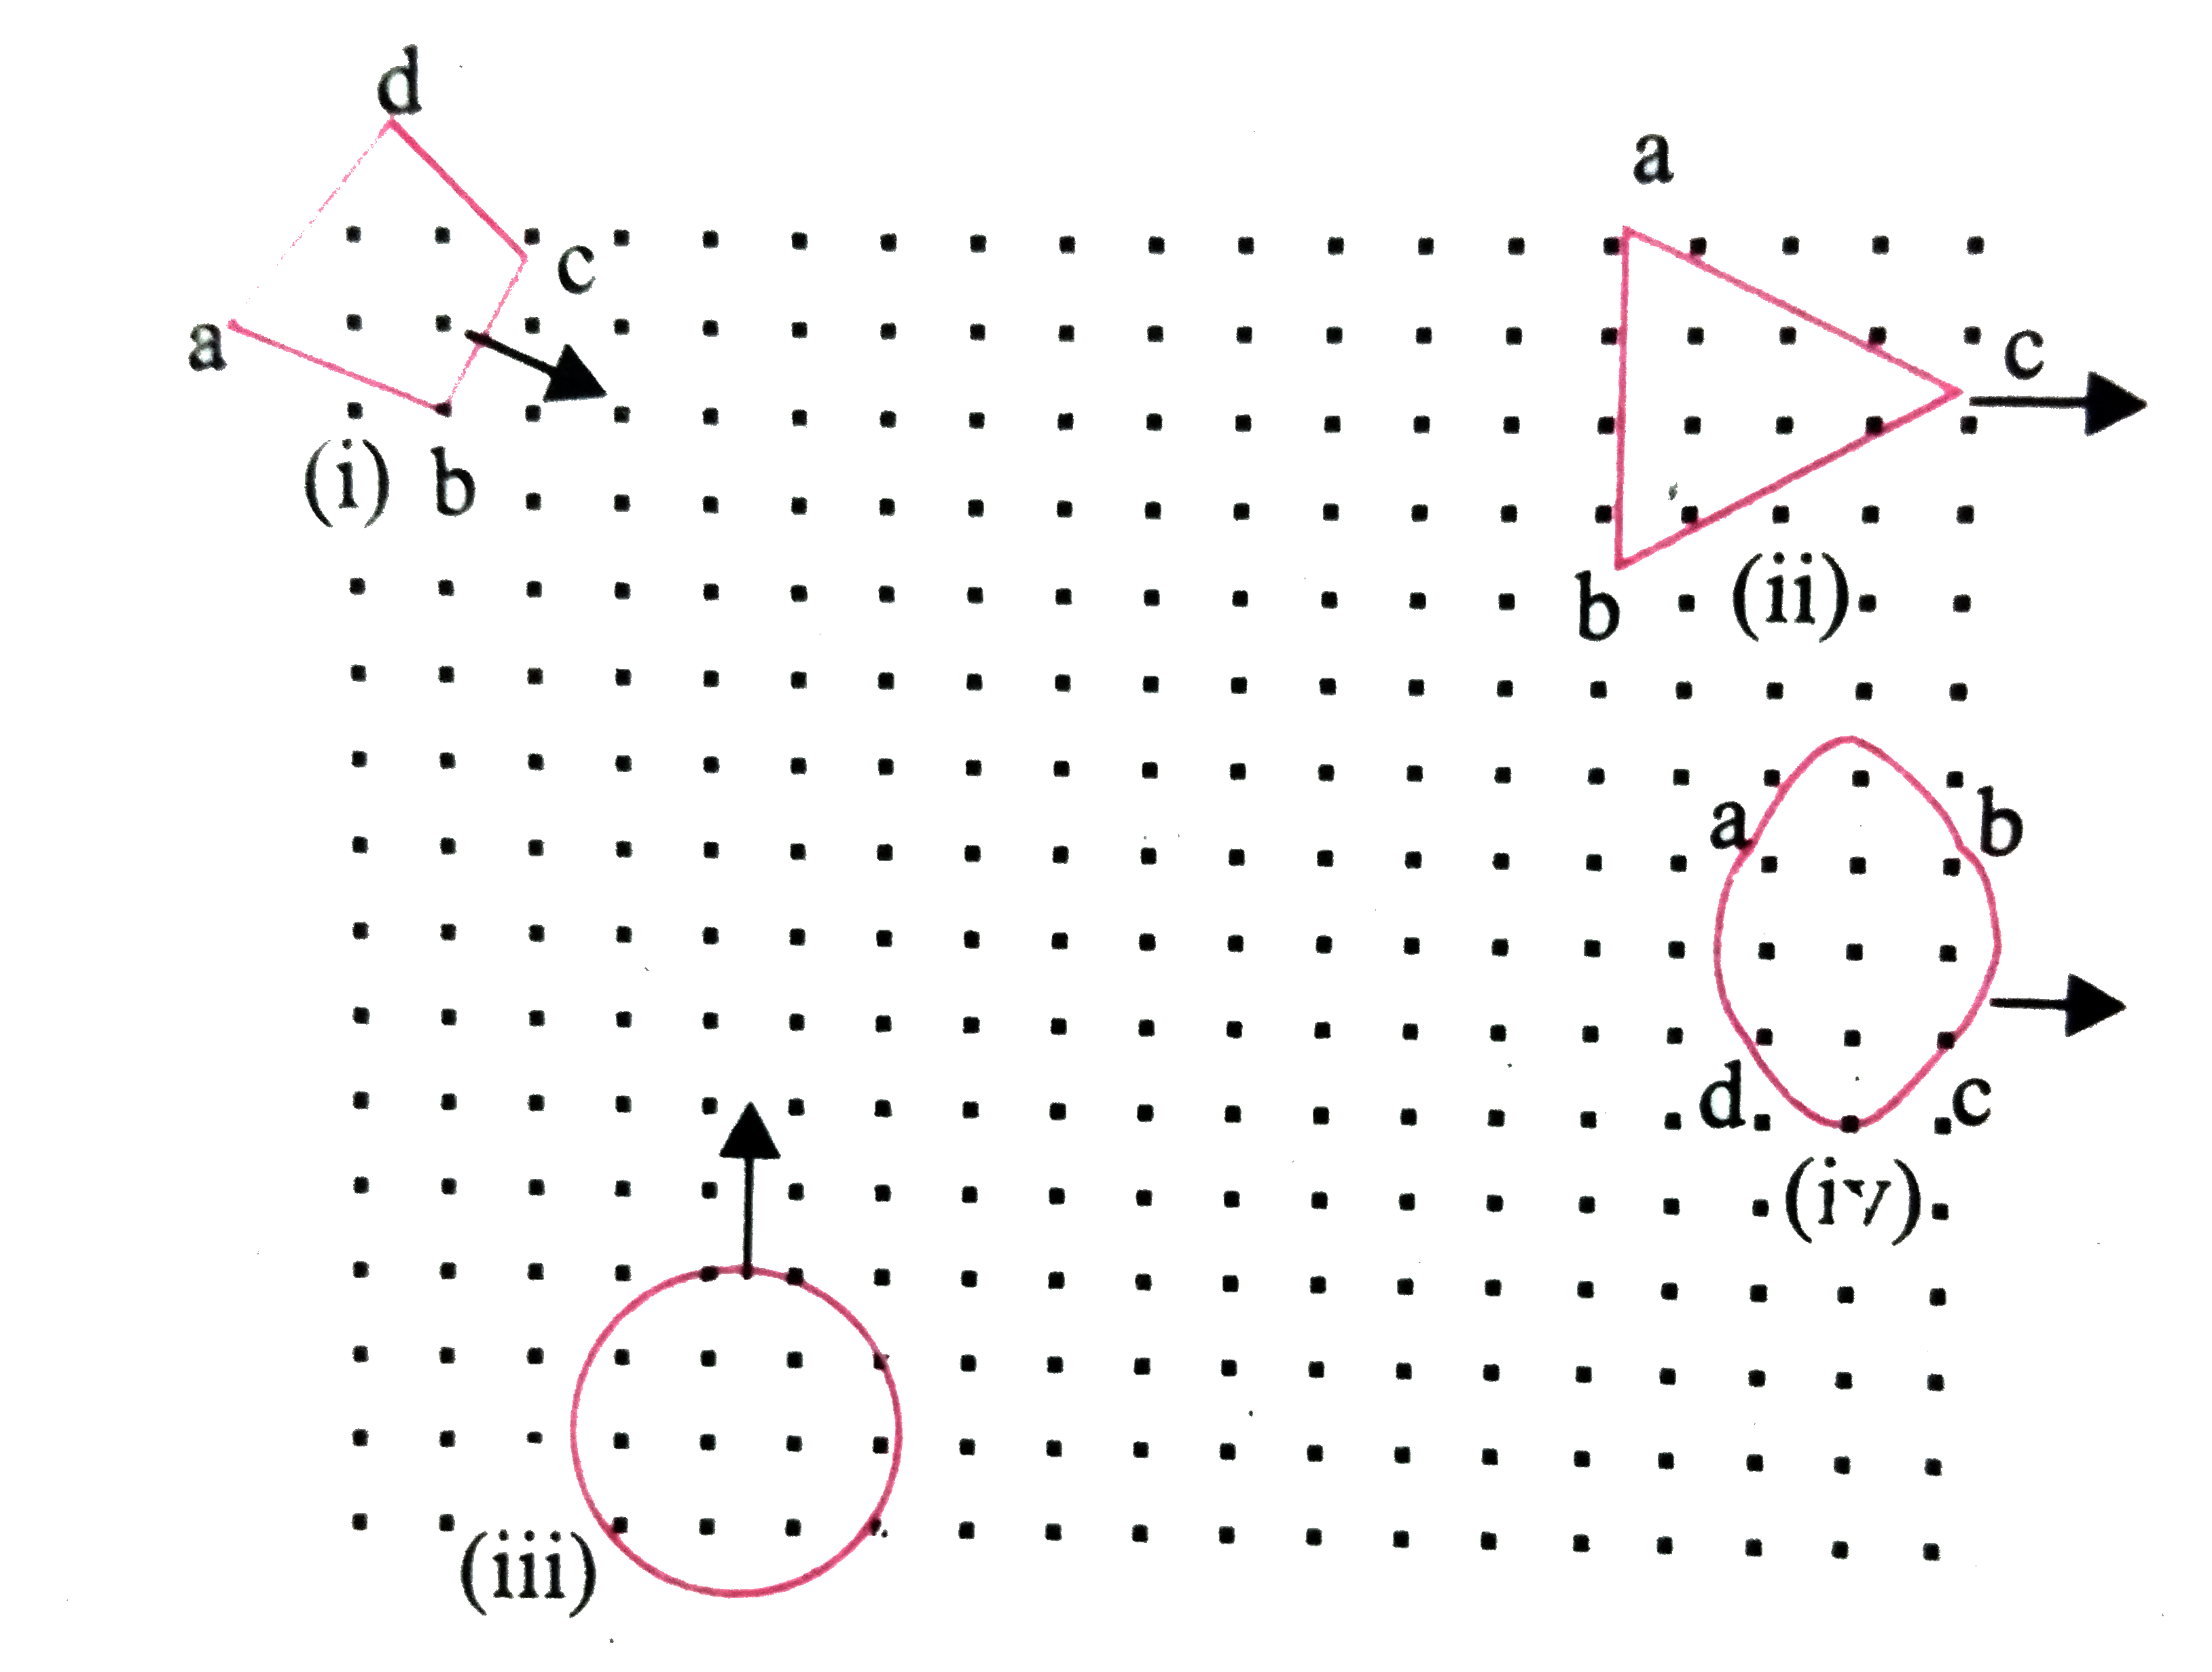 संलग्न चित्र में विभिन्न आकृतियों के लूप  प्रदर्शित किये गये है , जो चुम्बकीय क्षेत्र  में या उसके बाहर की ओर चलाये जाते है । चुम्बकीय क्षेत्र लुपो के समतल के लंबवत पाठक की ओर कार्य  करता है । लेन्ज के नियम का उपयोग करते लूप में प्रेरित धारा  की दिशा बताइये ।